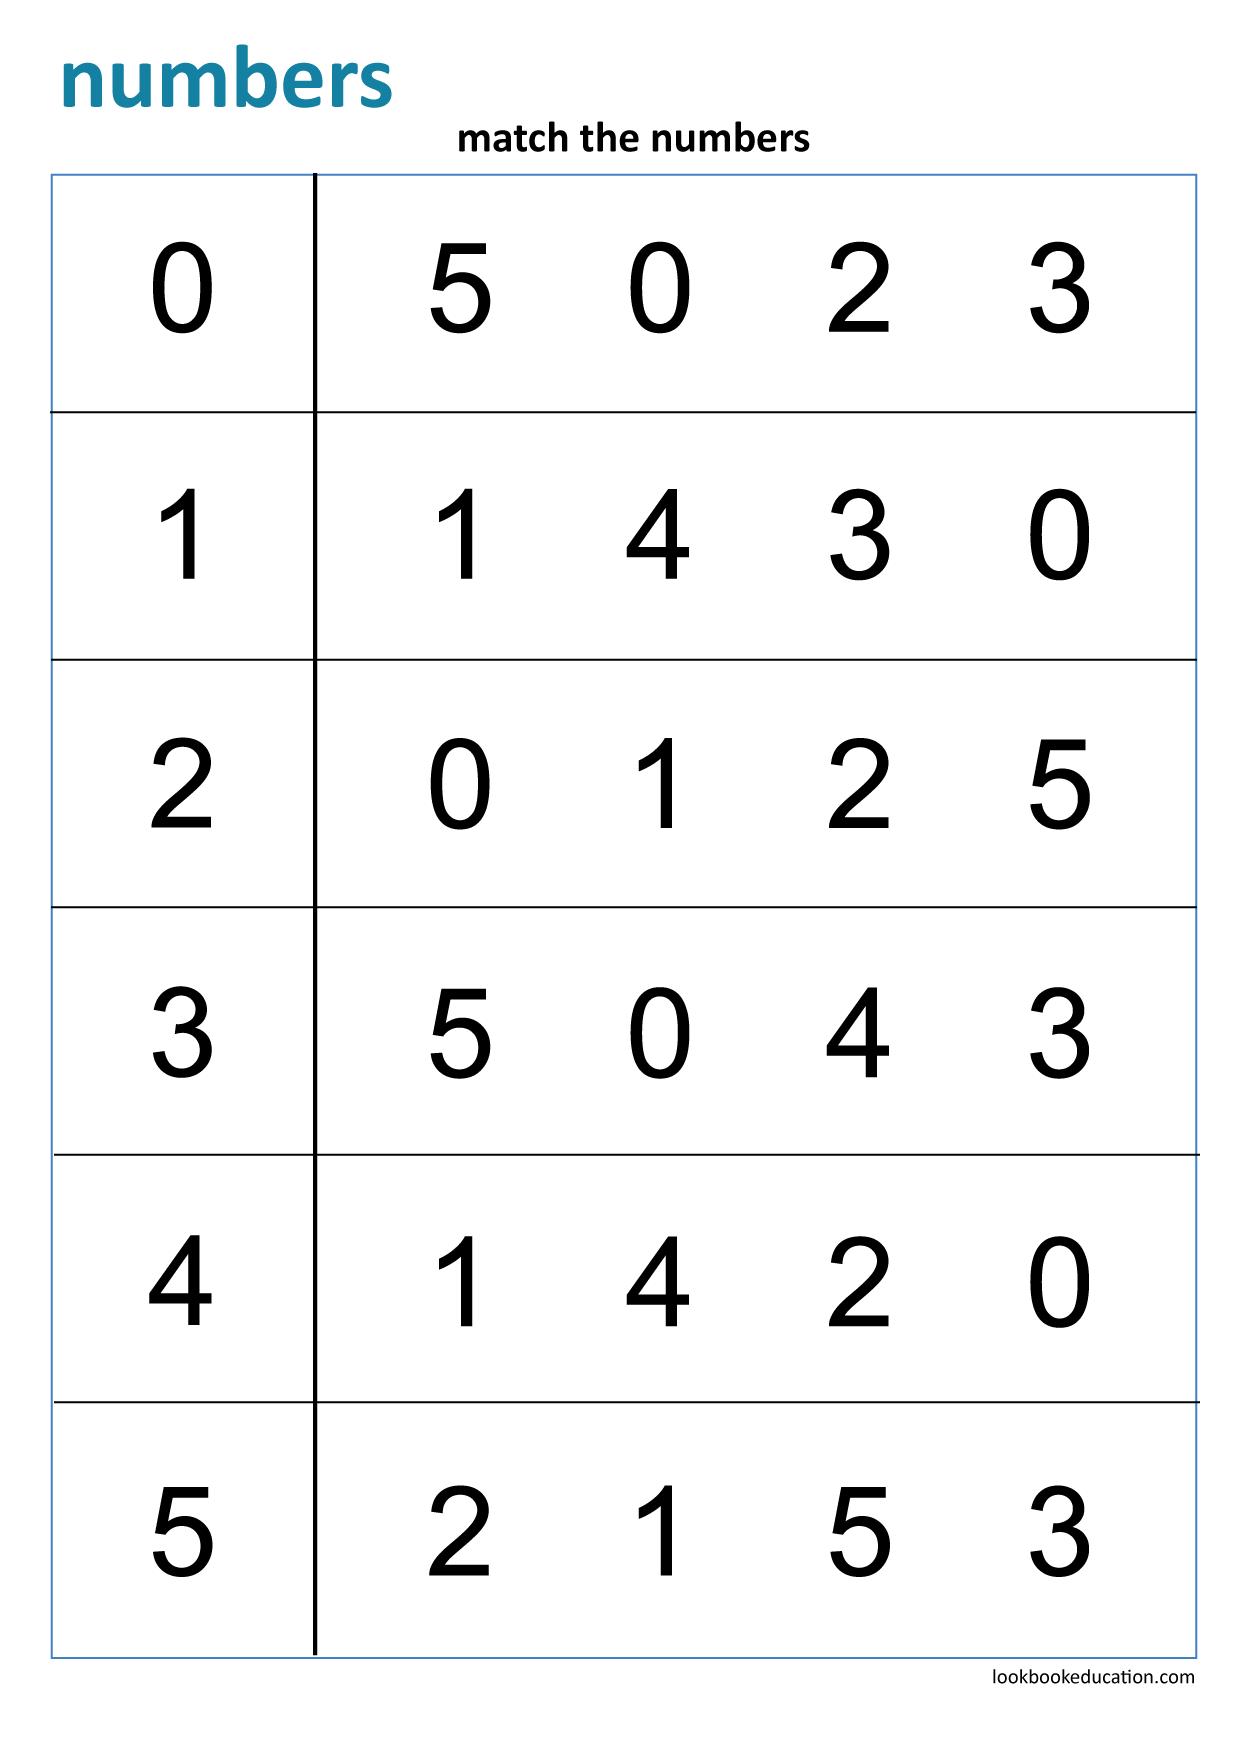 printable-number-match-worksheet